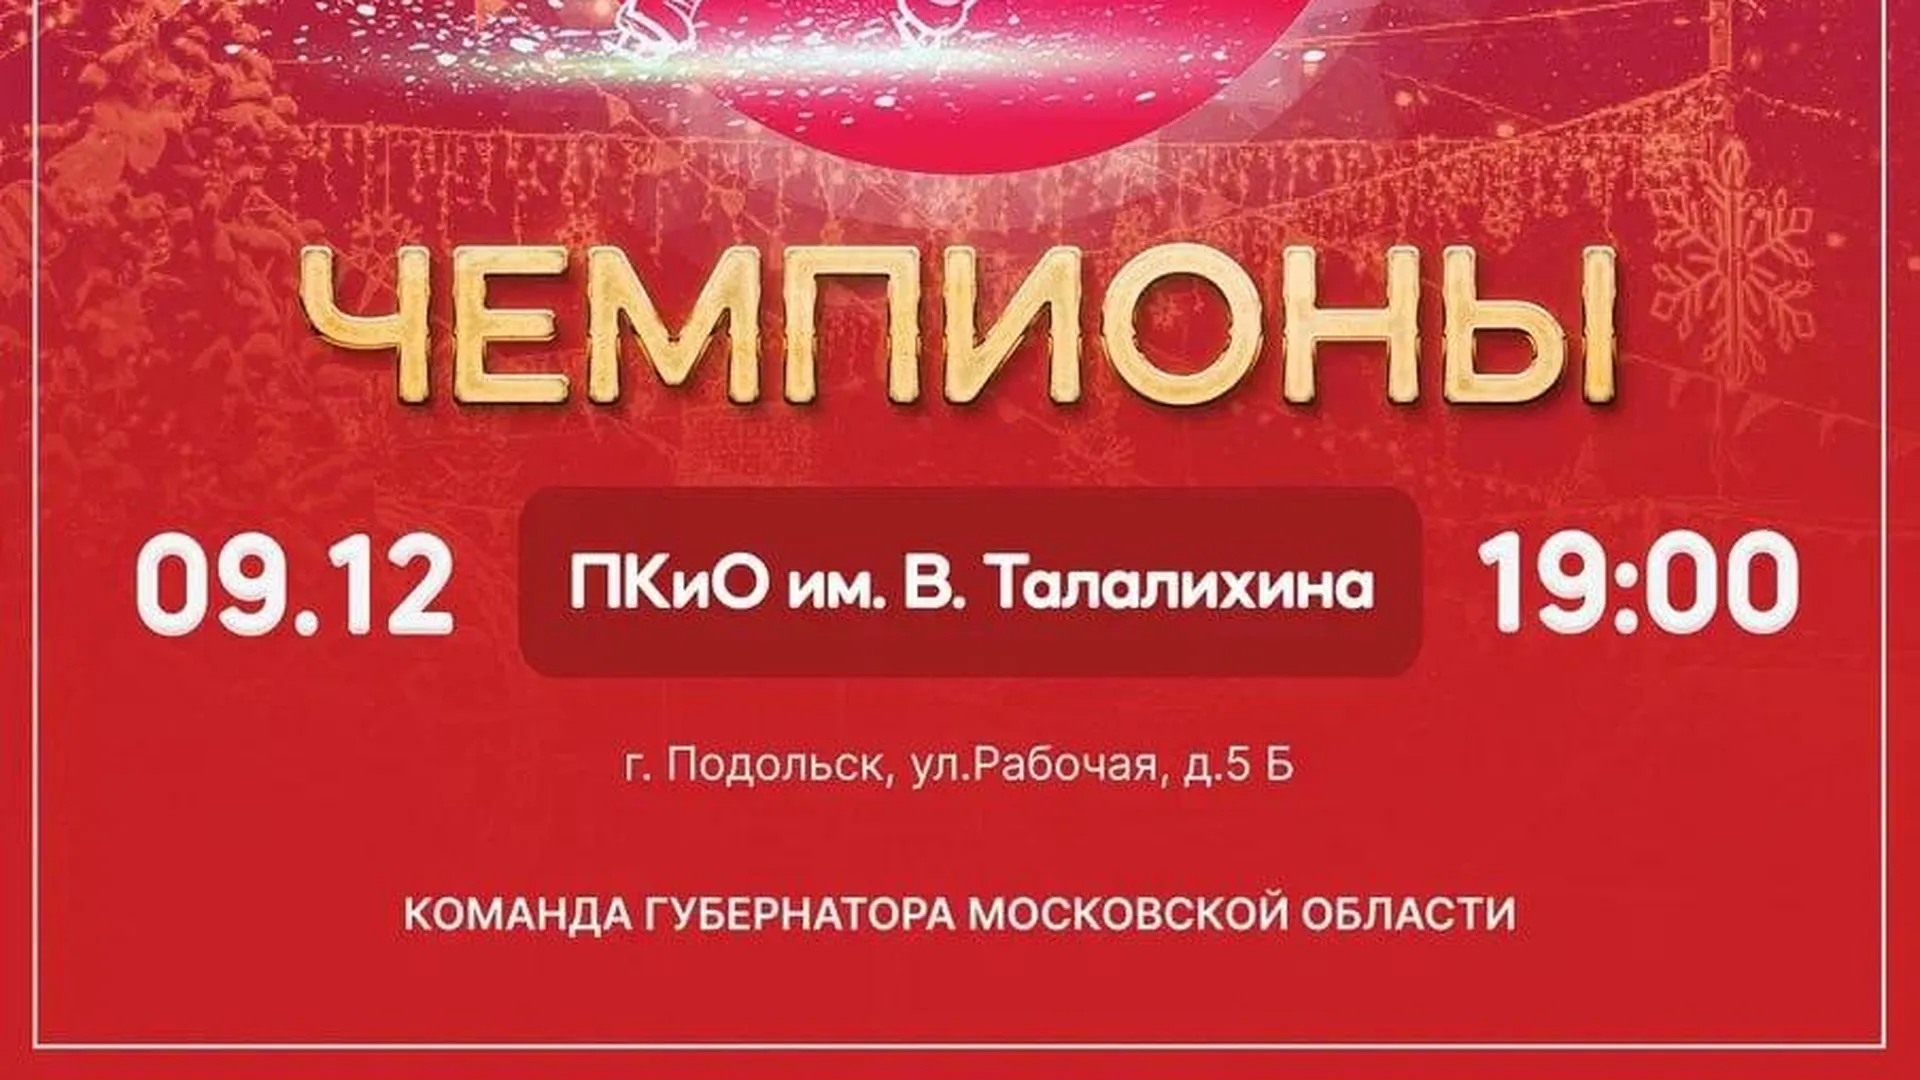 В Подольске состоится гала-шоу Ильи Авербуха на льду «Чемпионы»